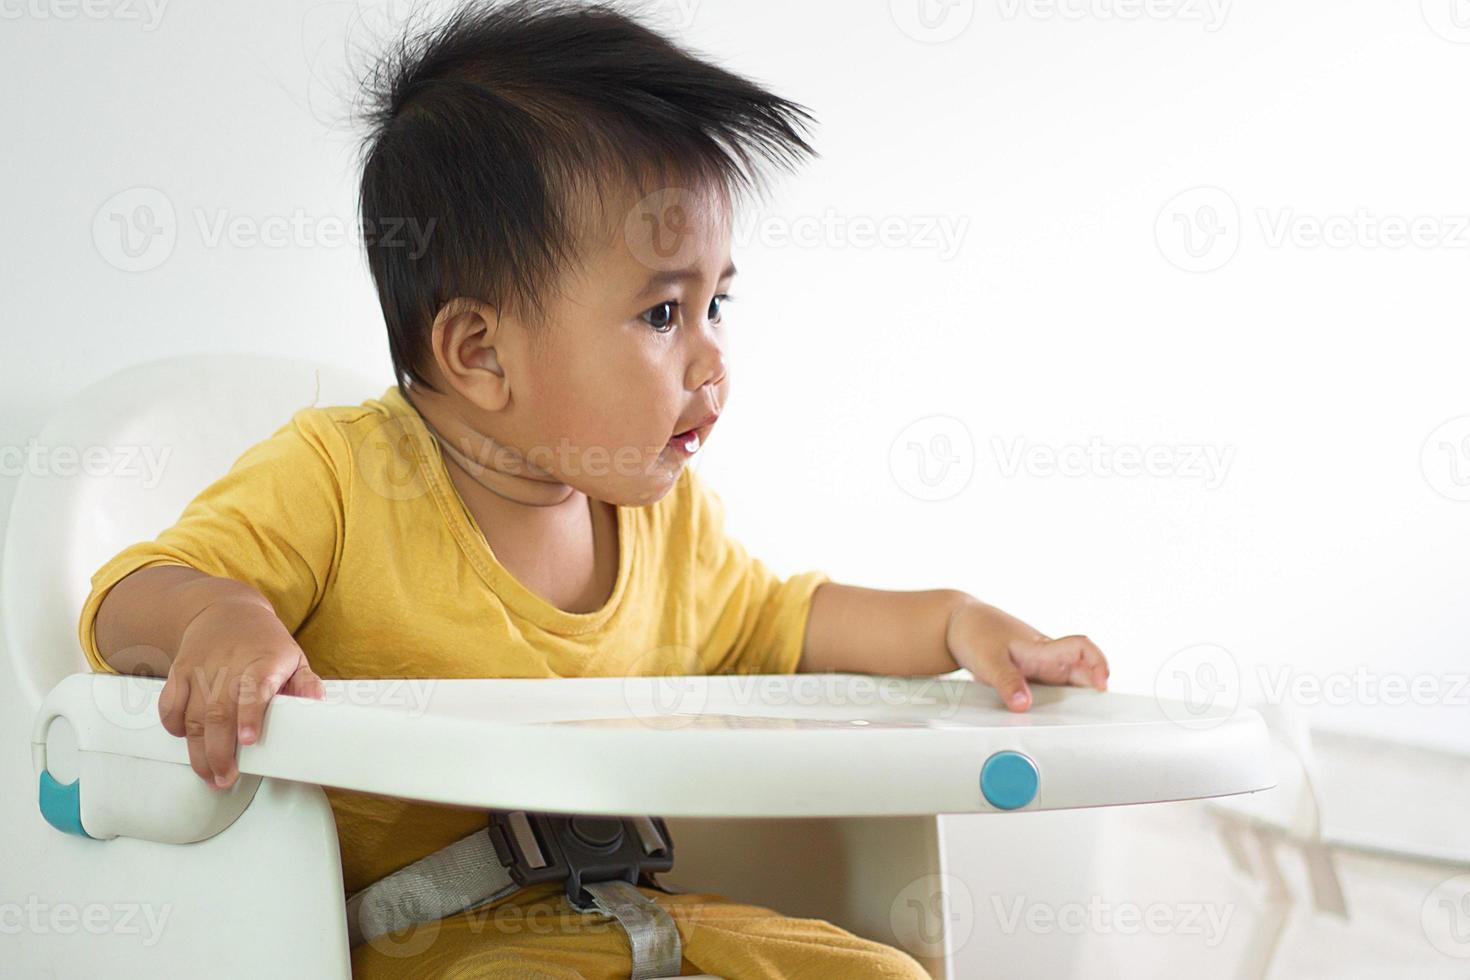 una linda chica blanca sentada en una silla desayunando en el hogar interior alimentando deliciosas comidas que son altamente nutritivas el bebé tiene una cara alegre, divertida, sonriente y feliz en un estilo de vida familiar saludable. foto